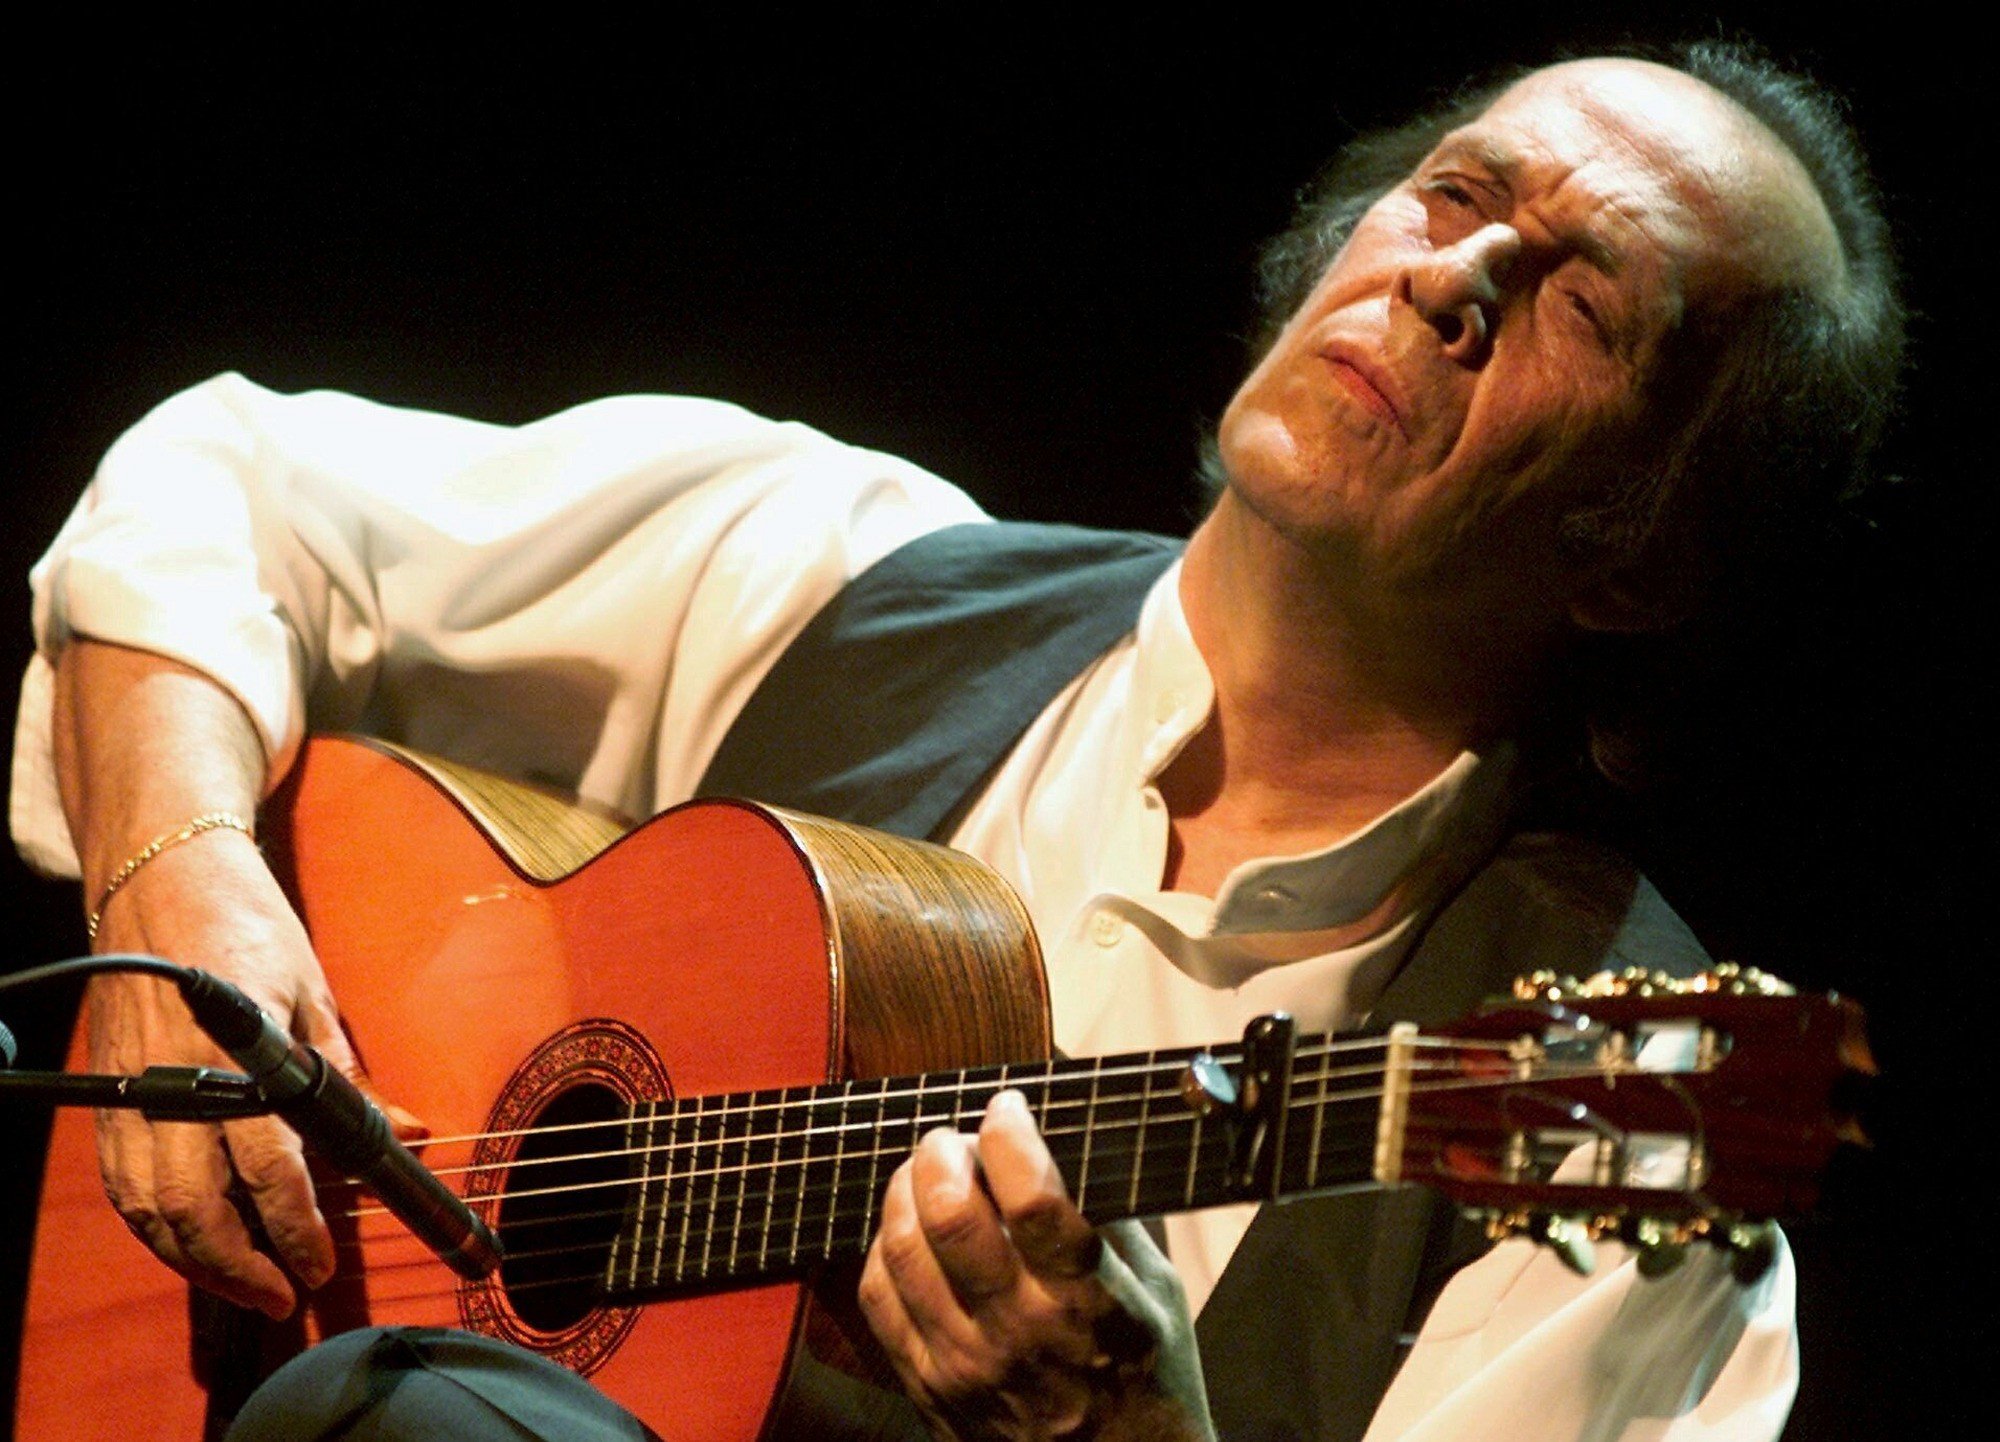 Spain: Flamenco guitarist Paco de Lucia dies at 66